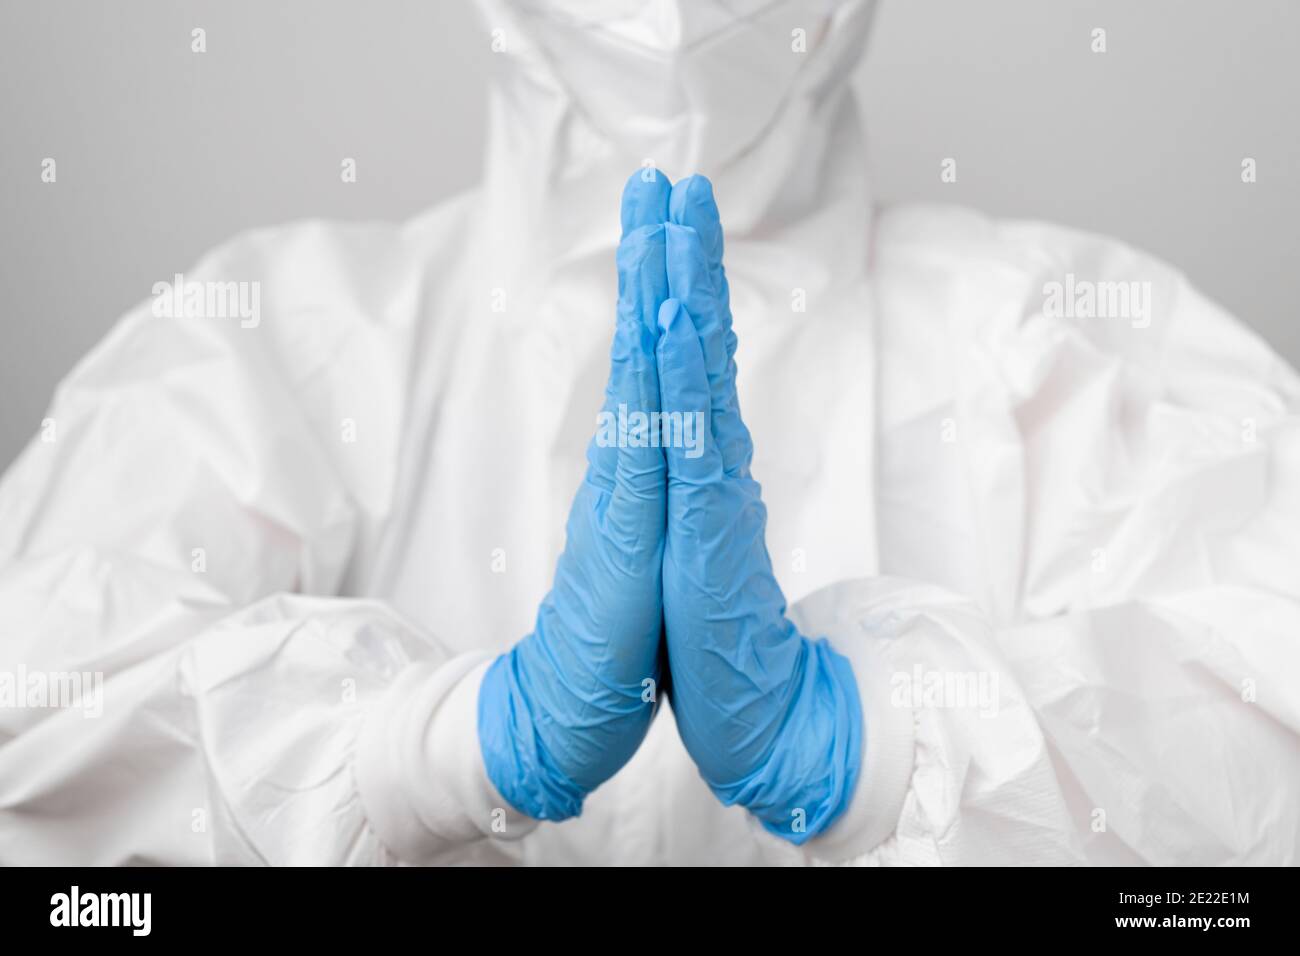 Dottore in una tuta protettiva contro il rischio biologico e maschera protettiva contro il coronavirus, Sars-Cov-2, Covid-19 che prega in guanti di gomma blu. Foto Stock